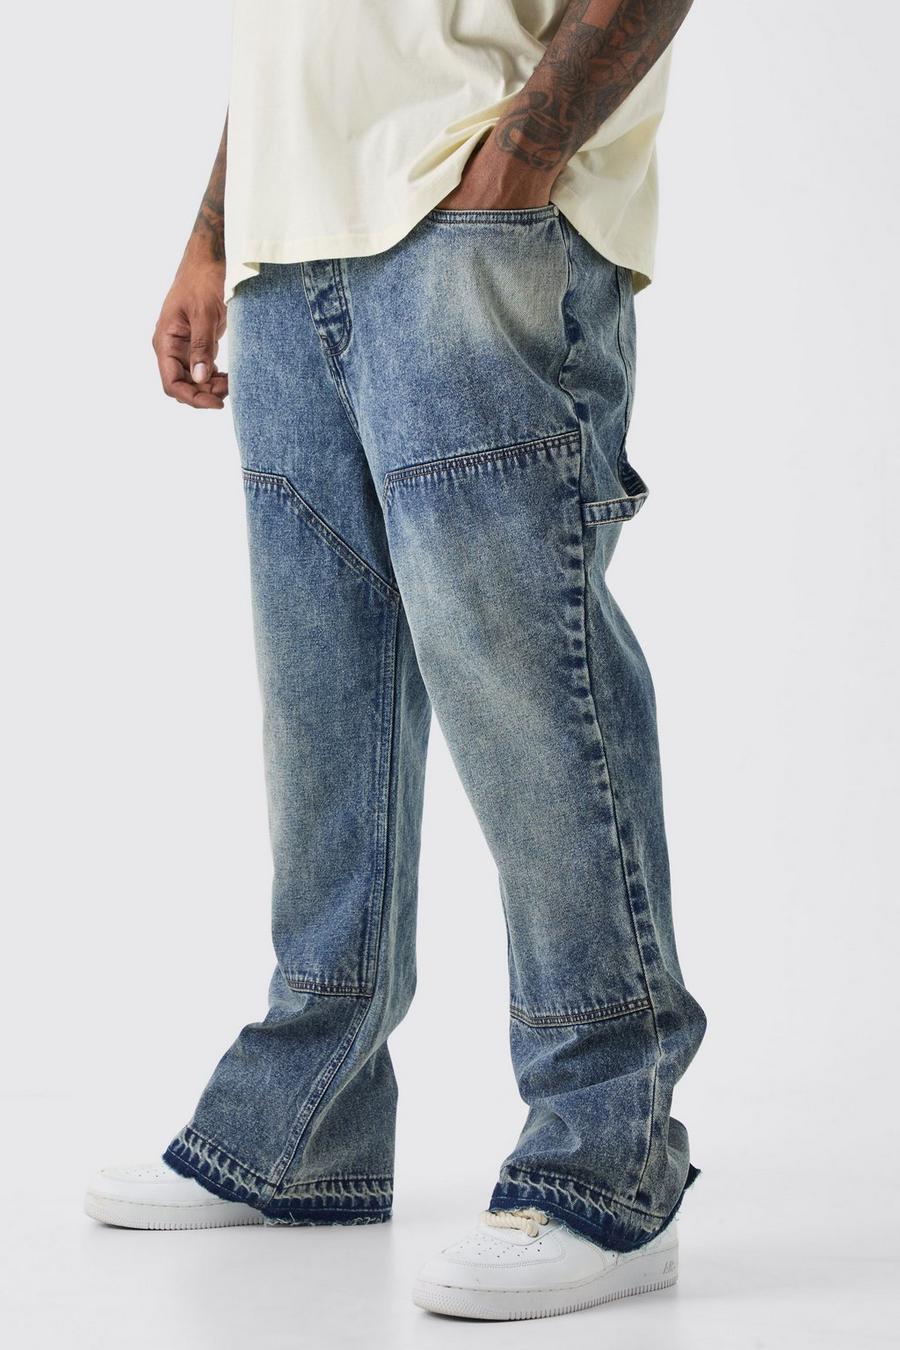 Jeans a zampa Plus Size Slim Fit in denim rigido stile Carpenter, Antique blue